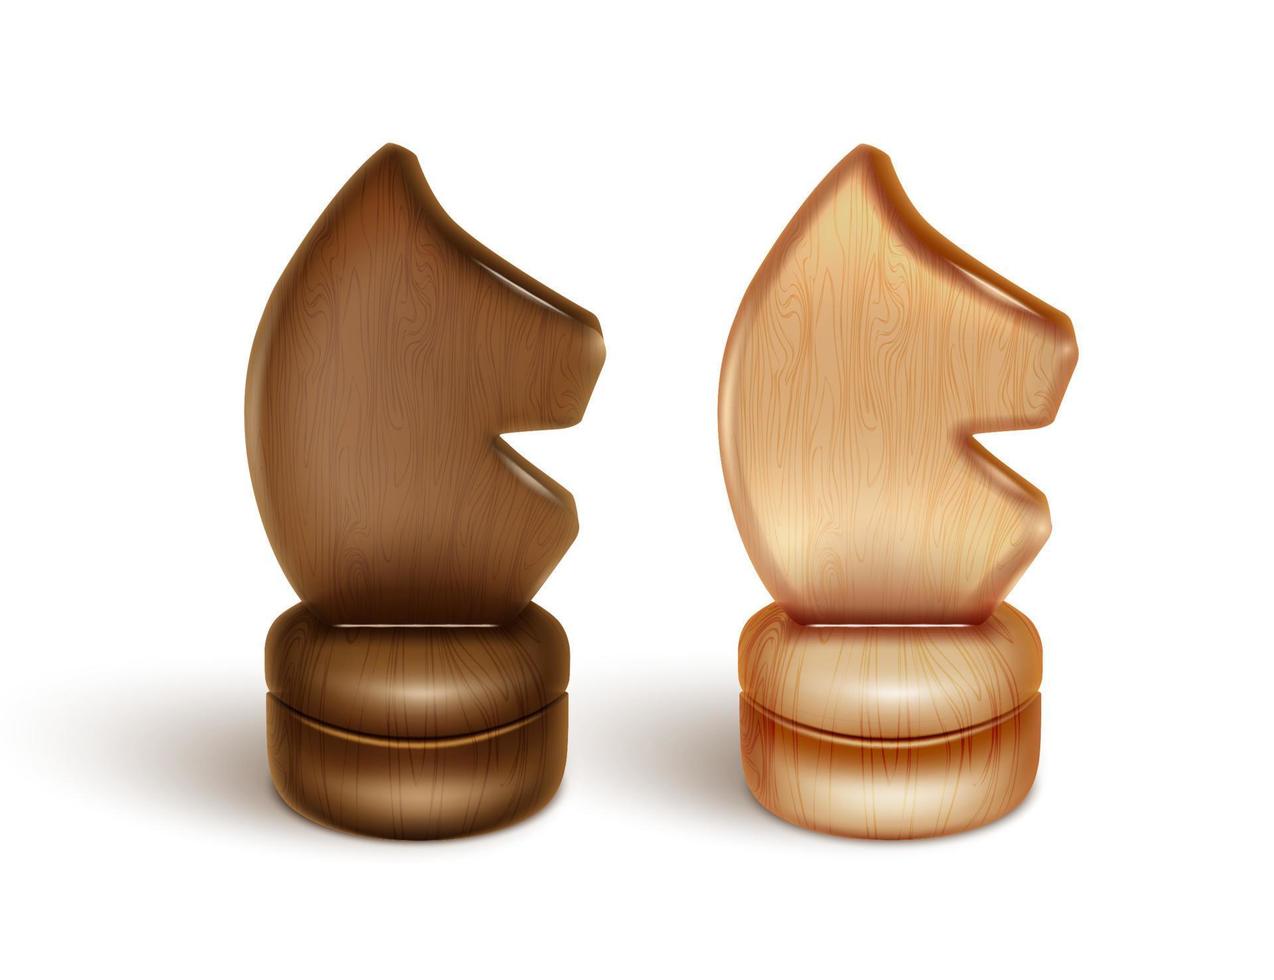 dos piezas de ajedrez - caballero, caballos. fabricado en madera lacada. Ilustración realista en 3d. aislado sobre fondo blanco. vector